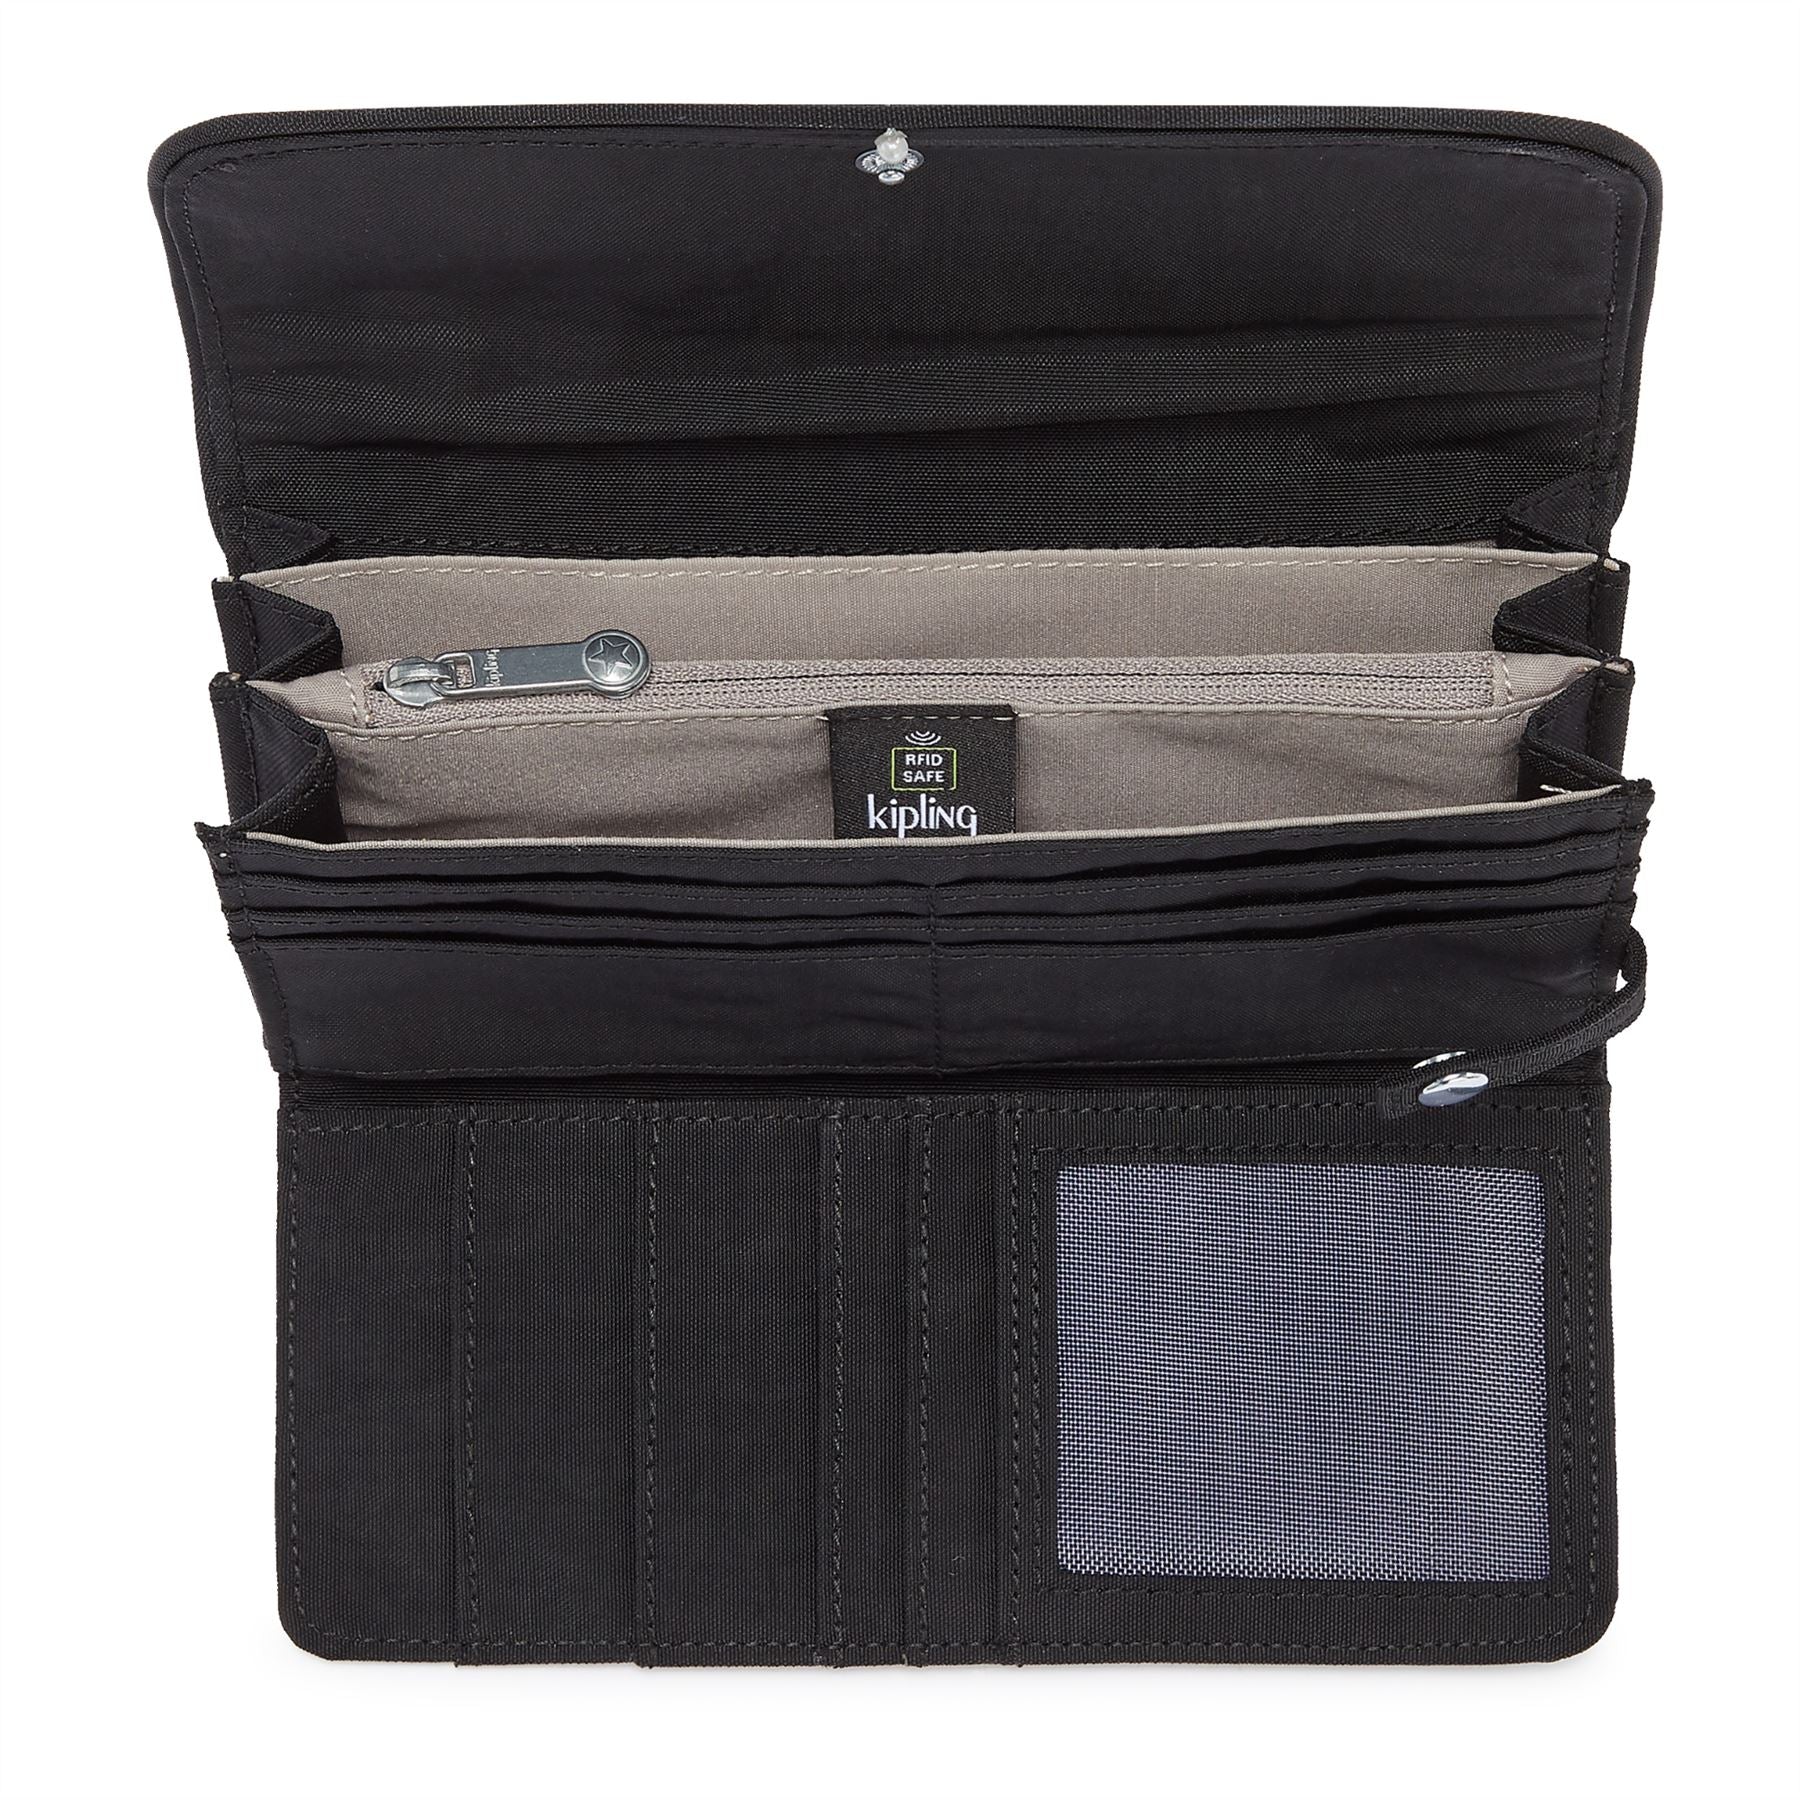 Kipling Smart-phone Wallets Purse Shoulder Bag Black Quilting Japan 2023  New | eBay